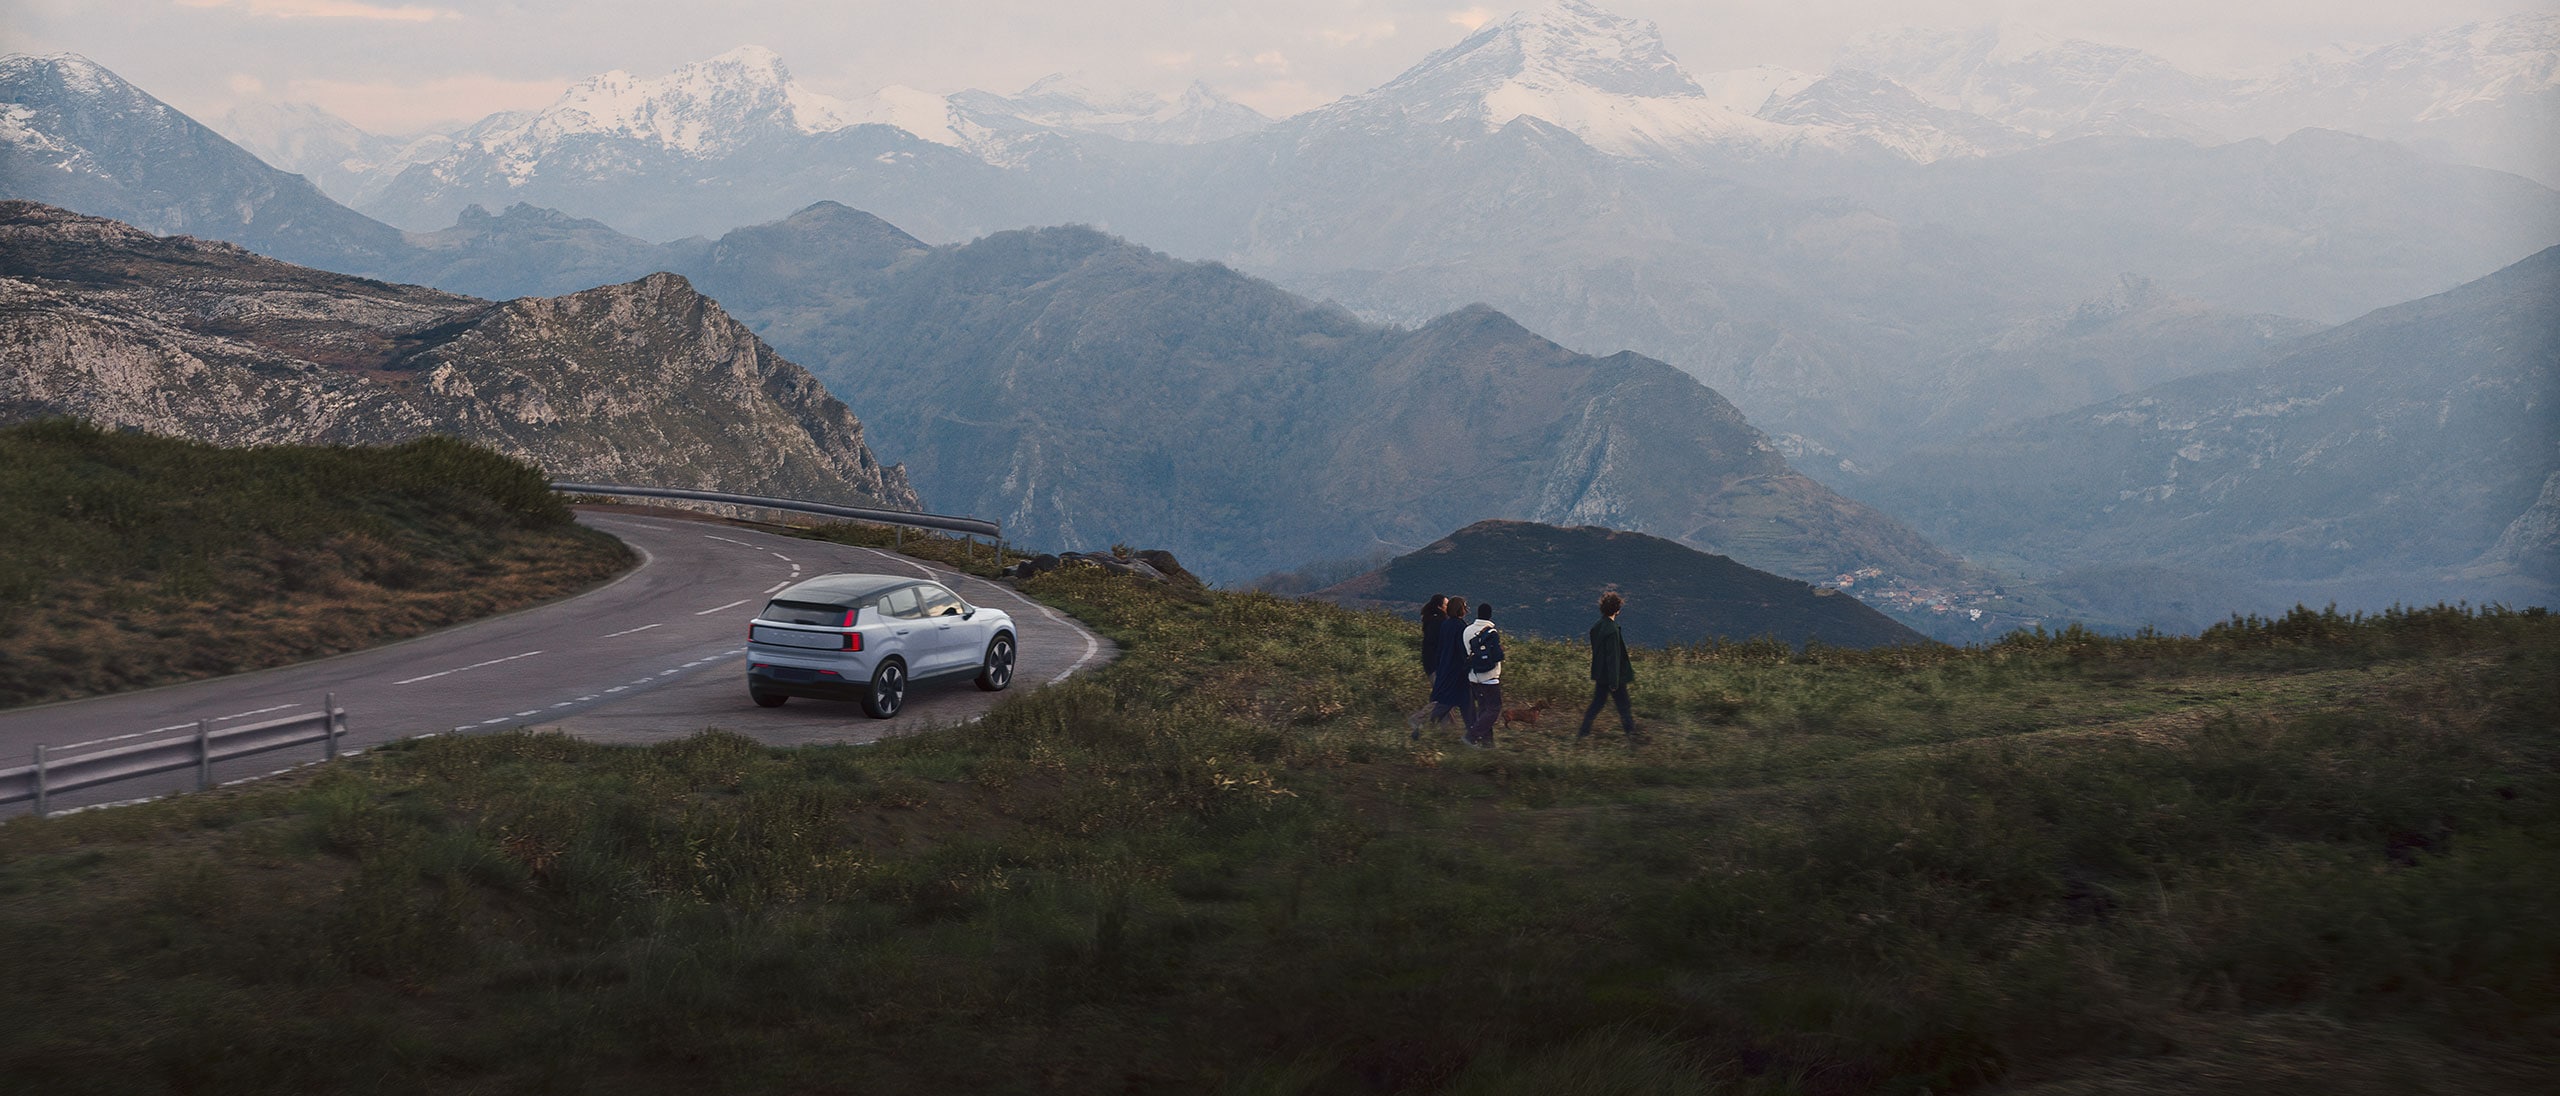 Täiselektriline Volvo on pargitud kauni mägise maastiku kõrvale.